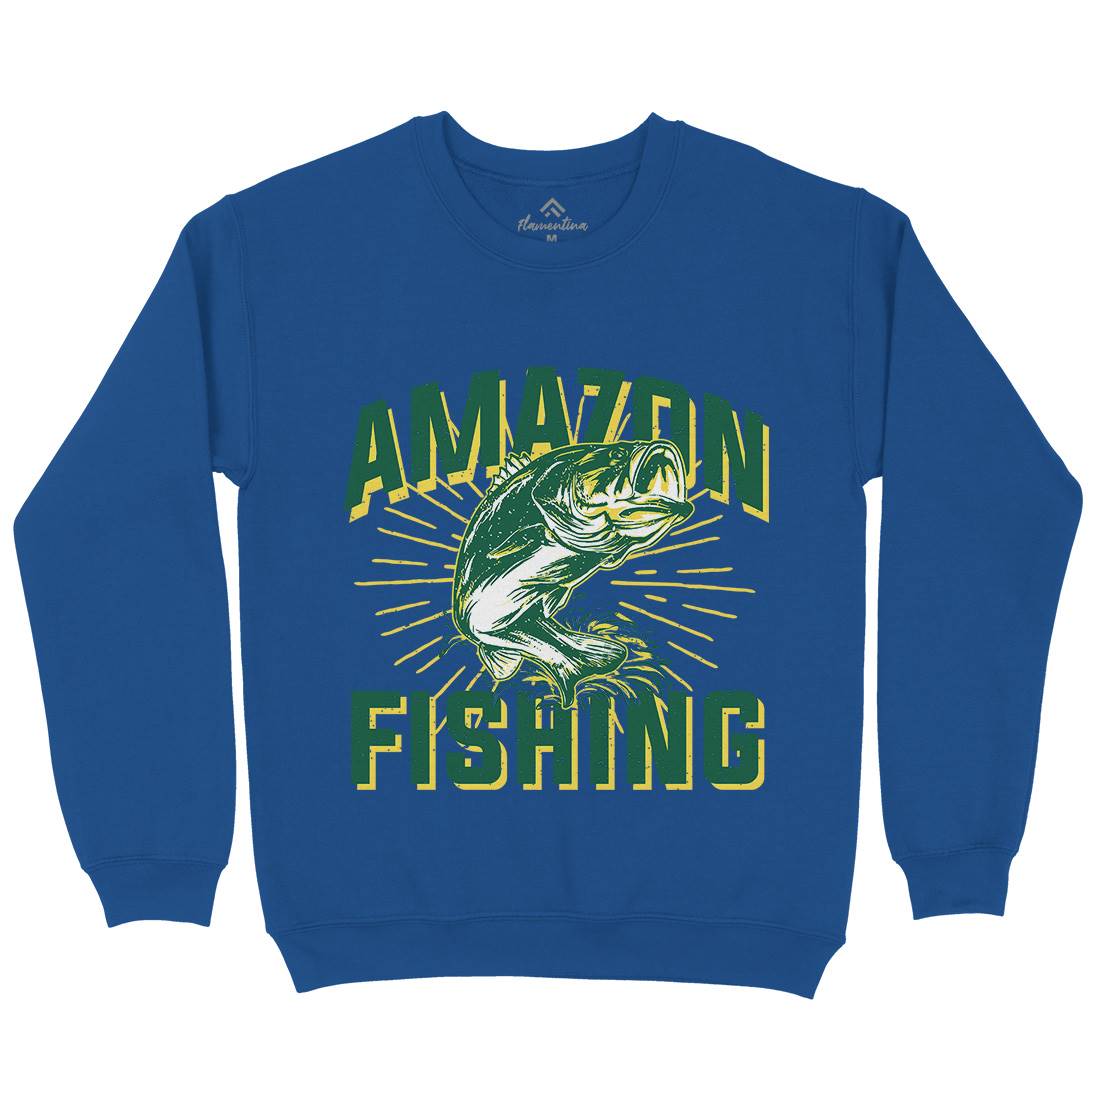 Amazon Kids Crew Neck Sweatshirt Fishing B678